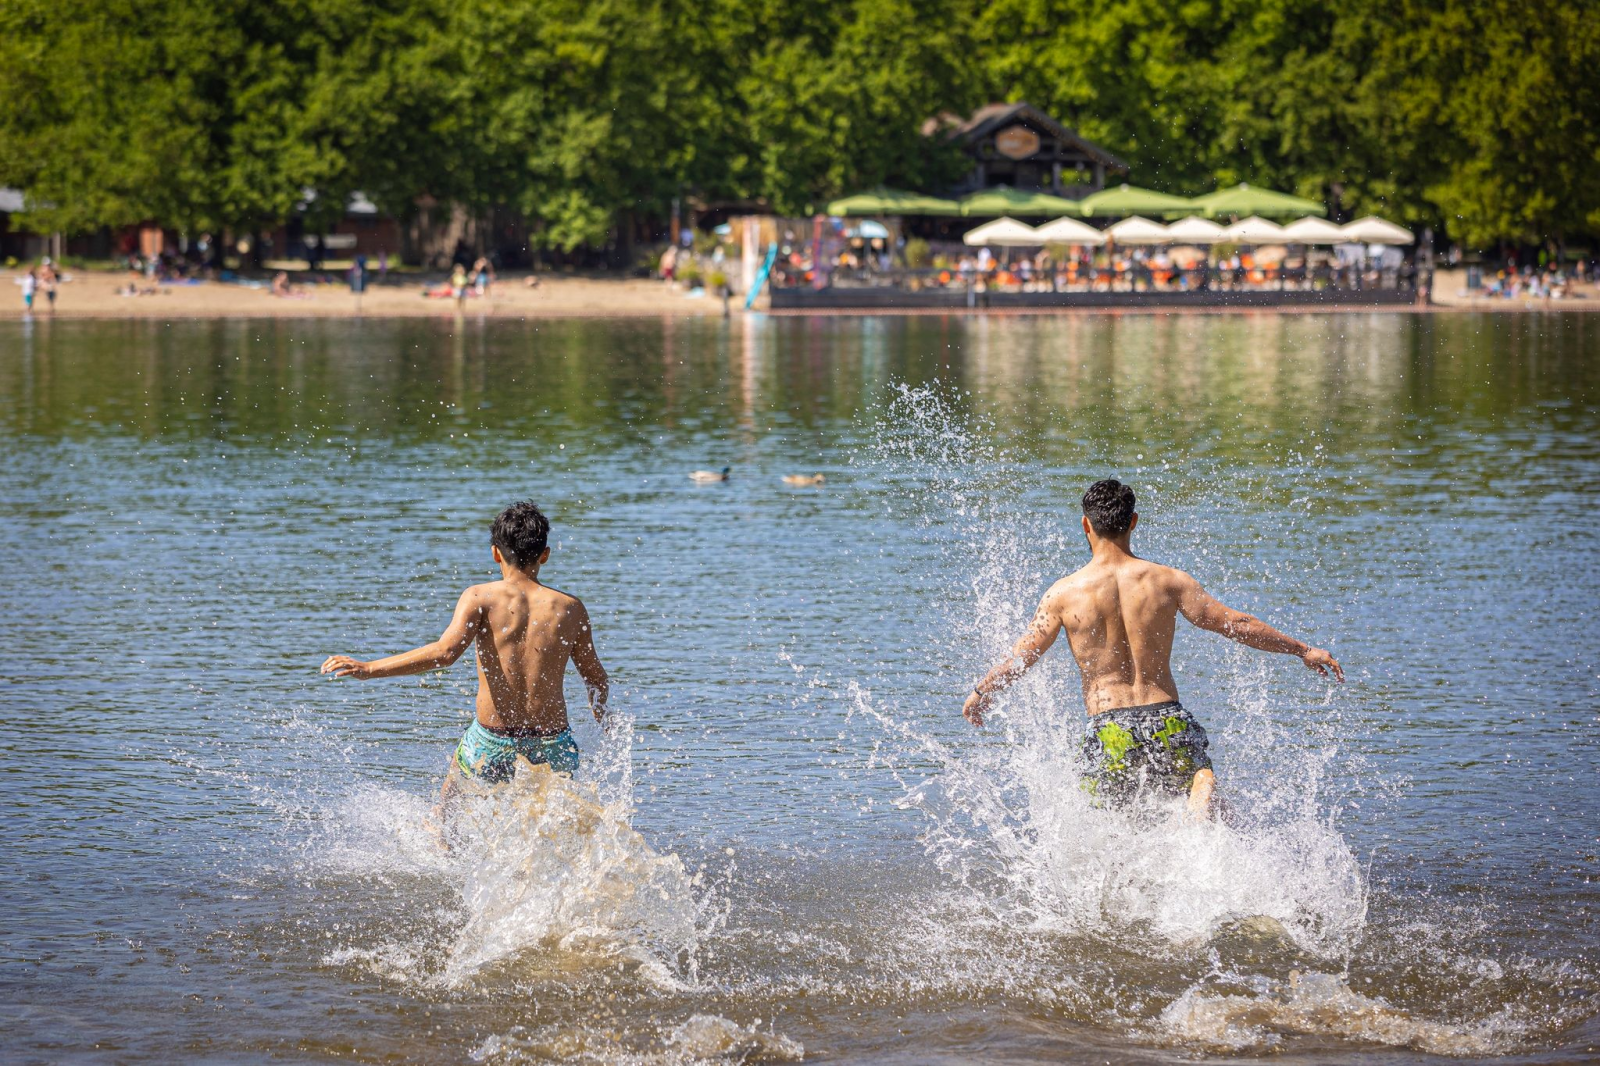 Zwei junge Männer rennen bei sonnigem Wetter in das Wasser.